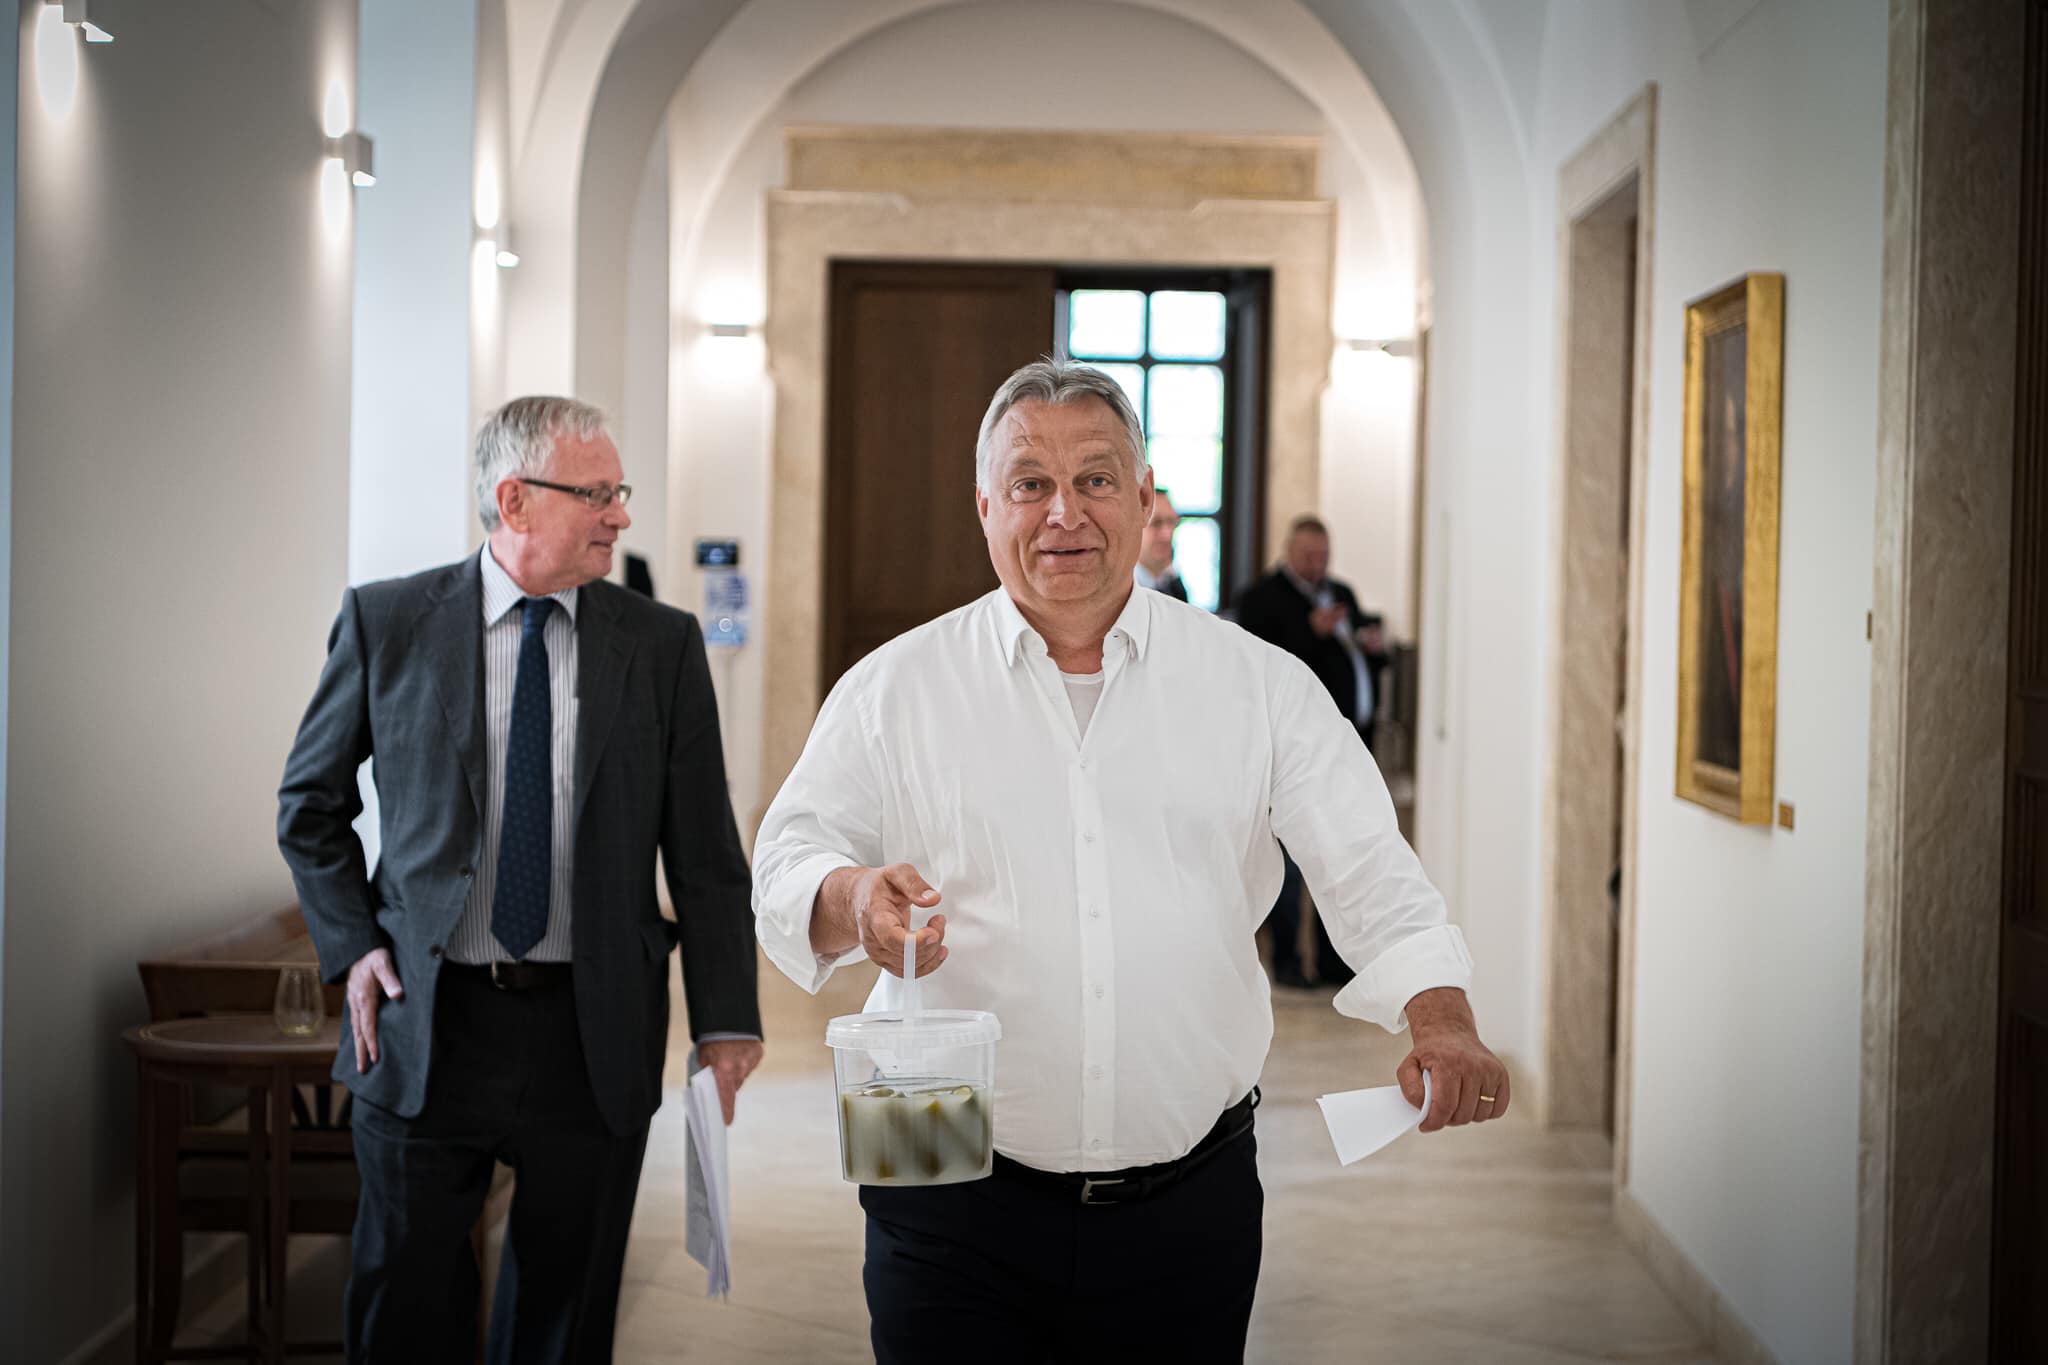 Orbán jóváhagyása nélkül senki sem dolgozhatott otthonról az államigazgatásban